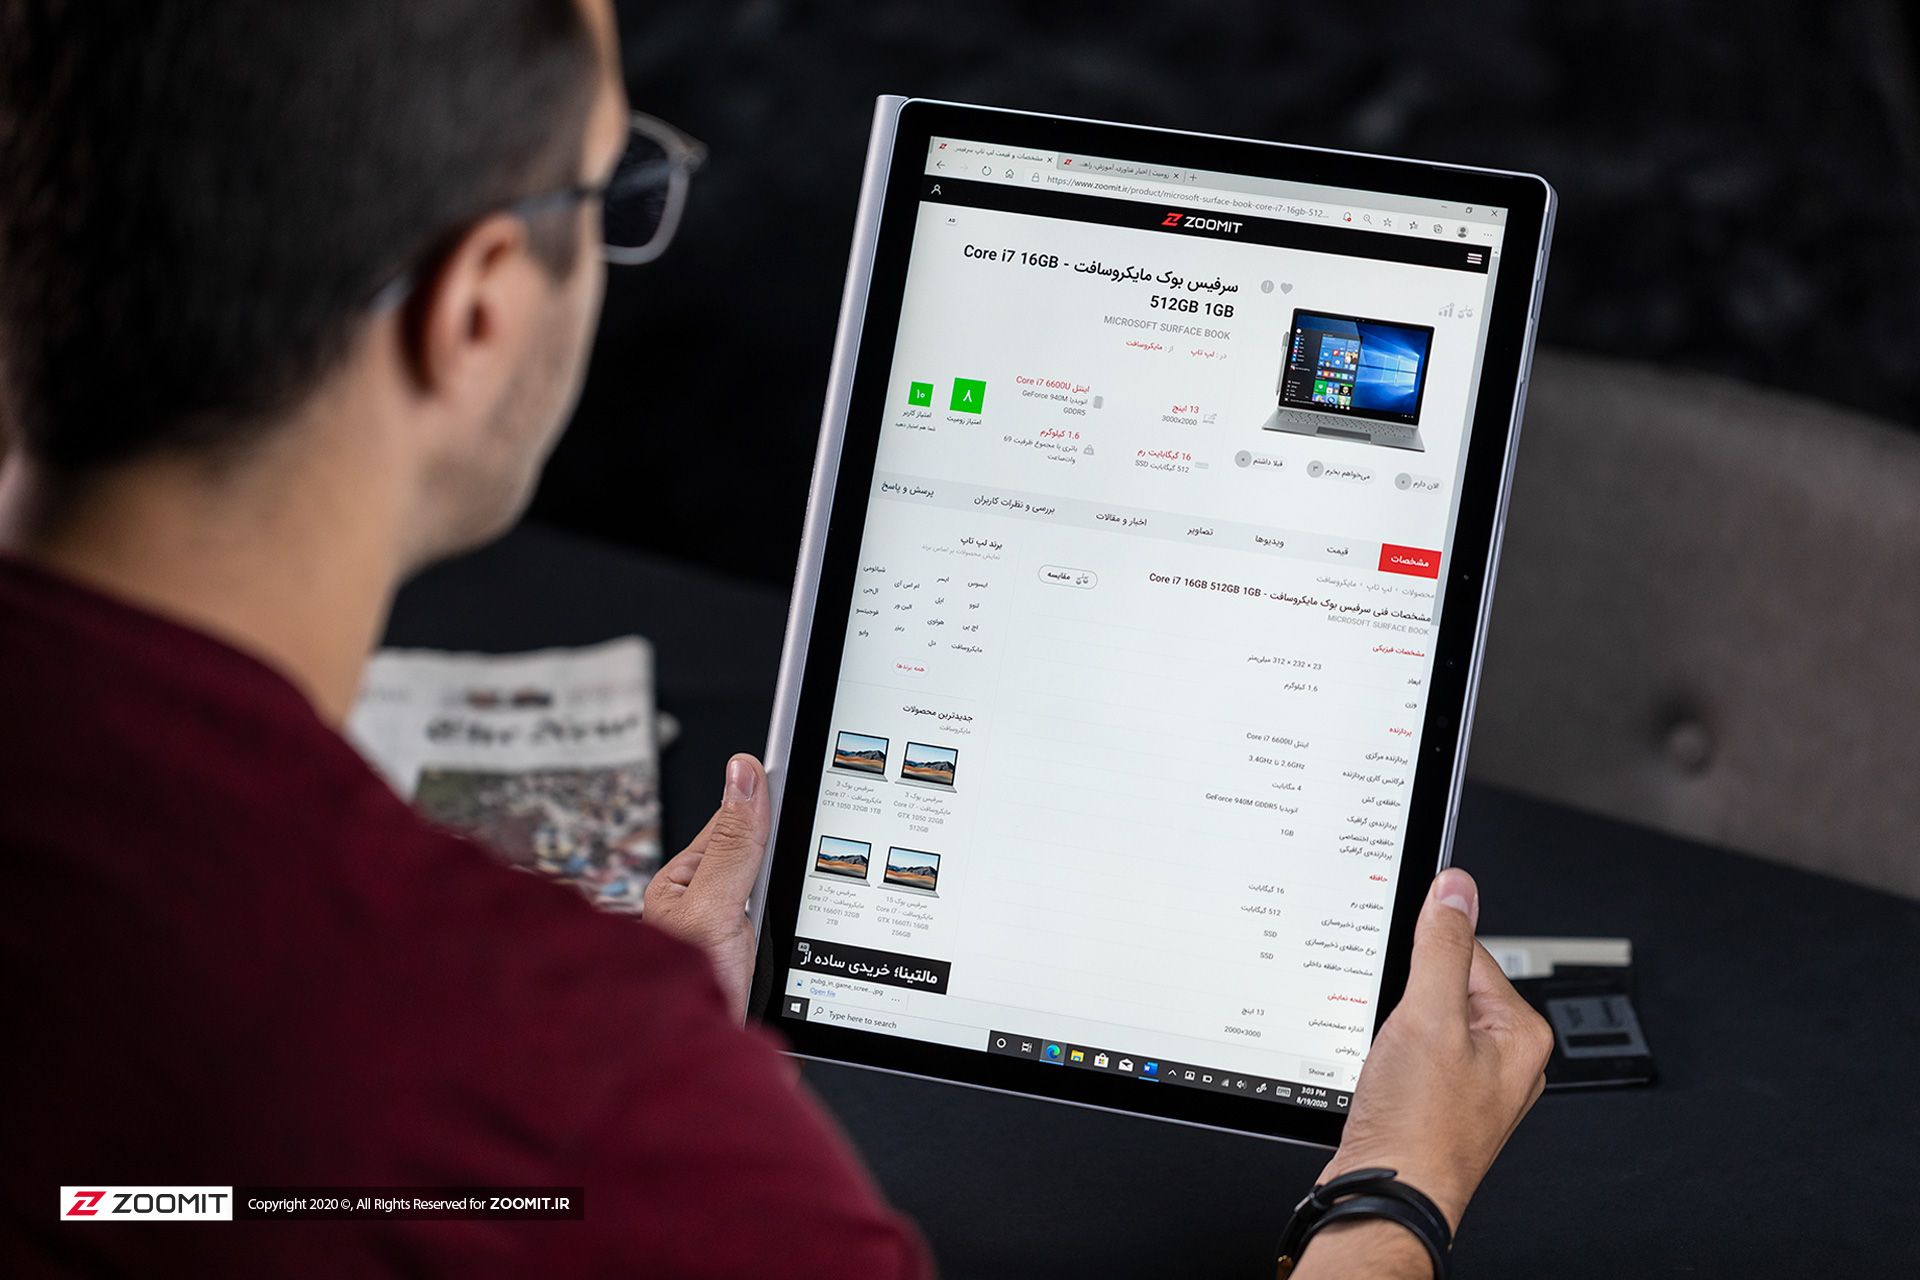 مرجع متخصصين ايران سرفيس بوك ۳ مايكروسافت / Microsoft Surface Book 3 در حالت تبلت